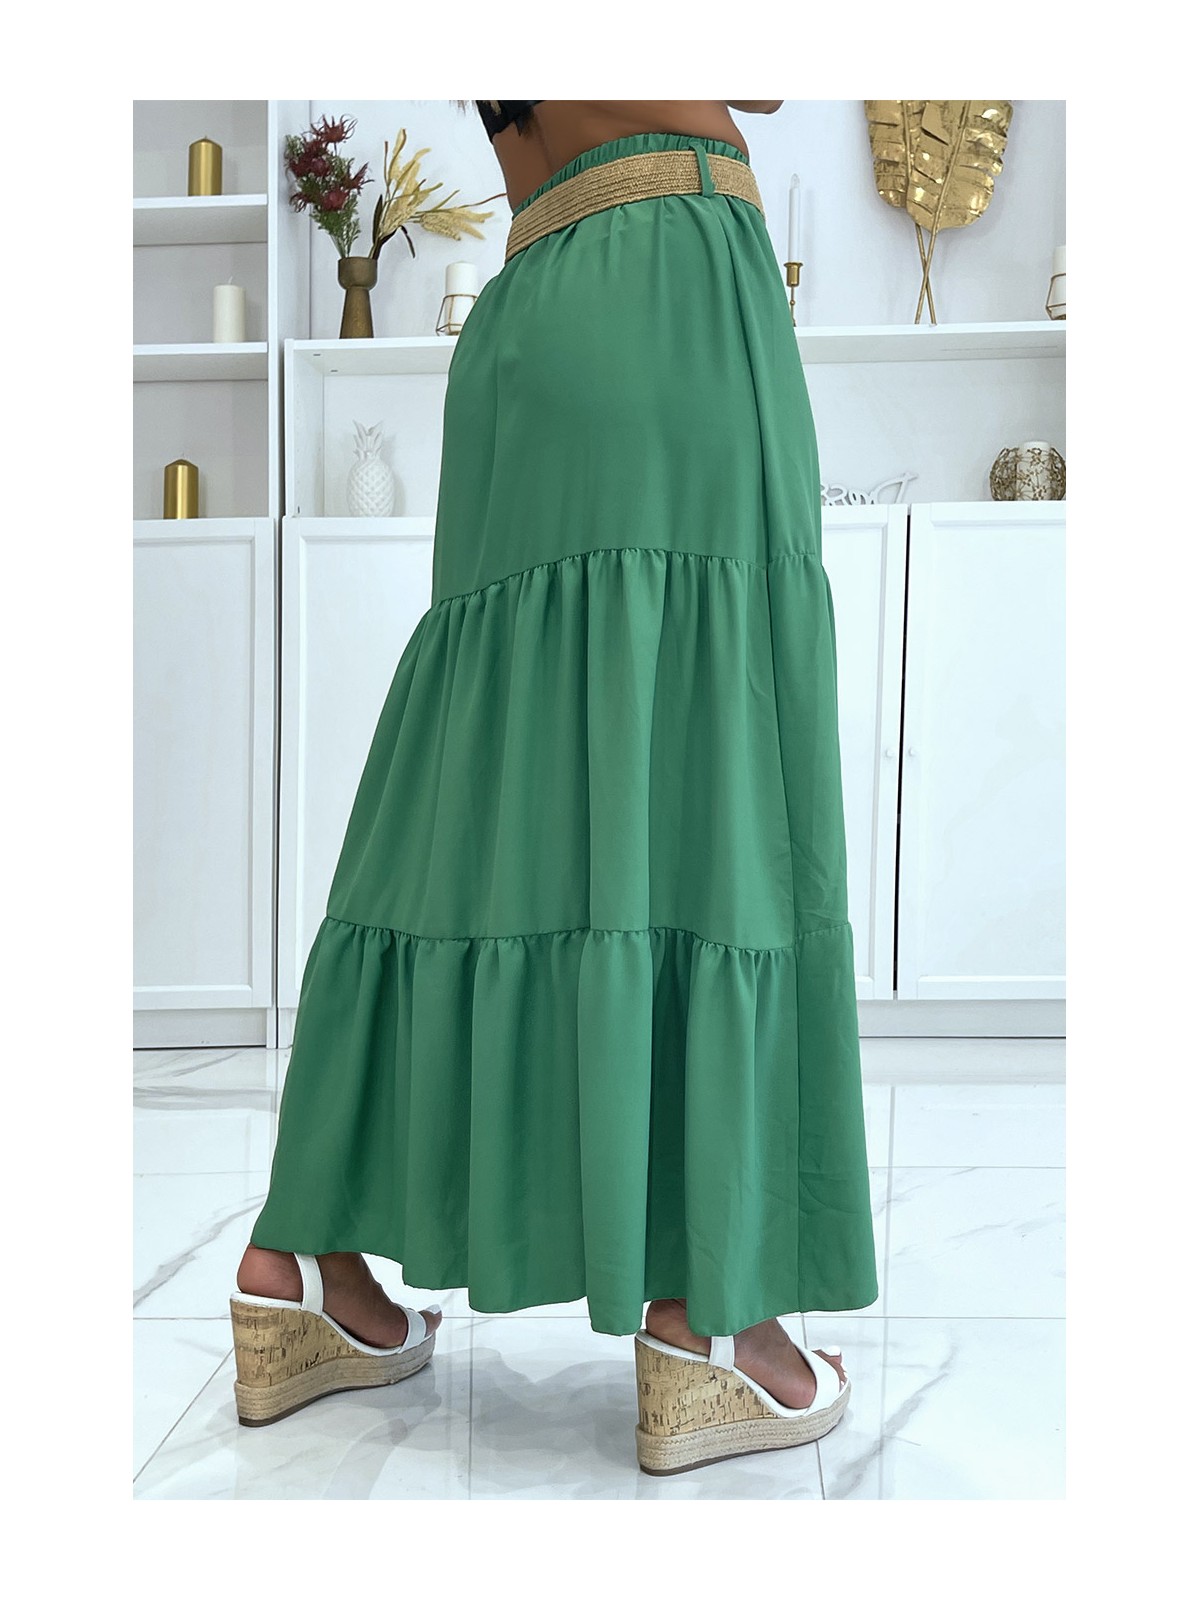 Longue jupe verte style bohème chic avec magnifique ceinture effet paille à fermoir rond - 3